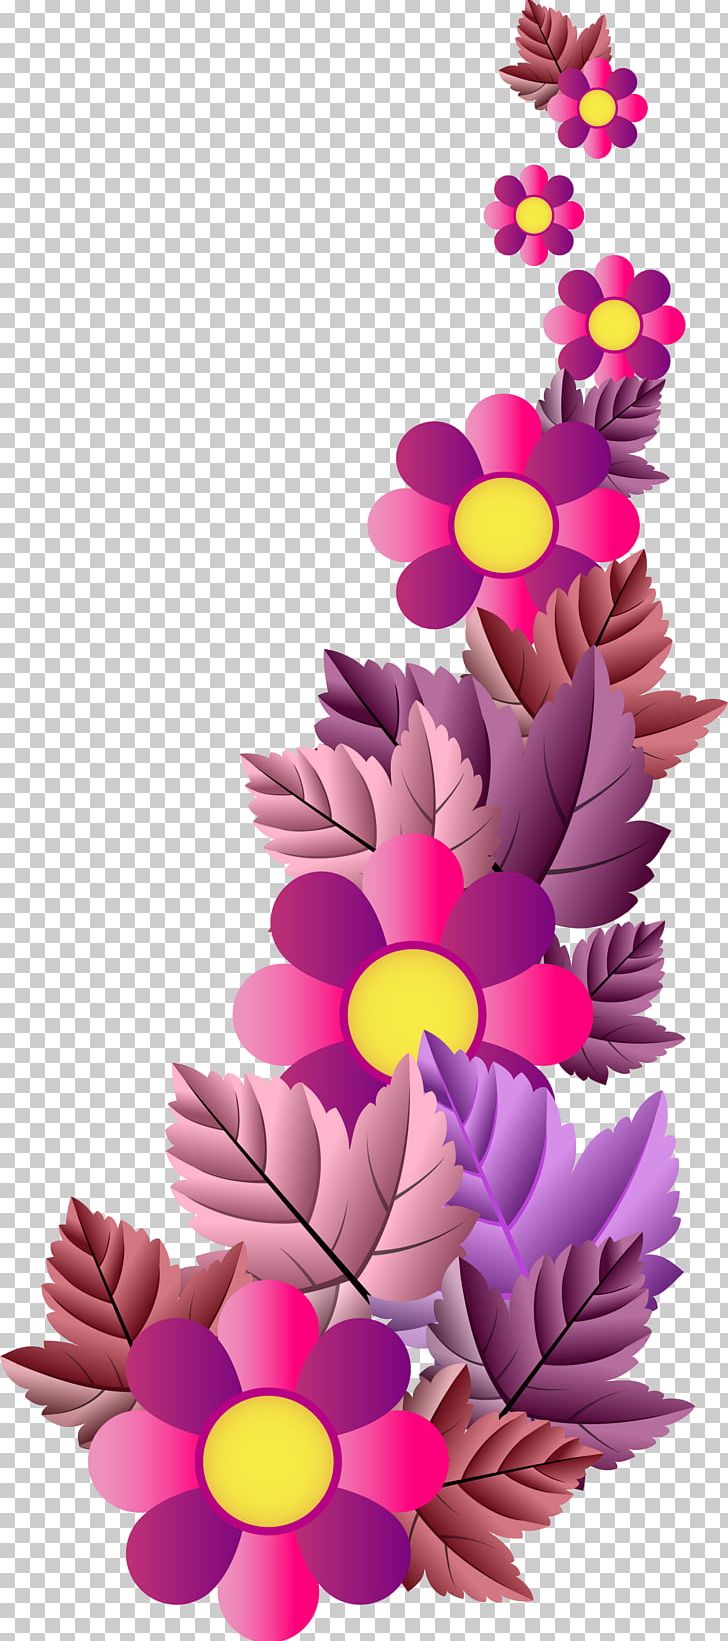 Floral Design Cut Flowers PNG, Clipart, Art, Cut Flowers, Deviantart, Floral Design, Flores Free PNG Download